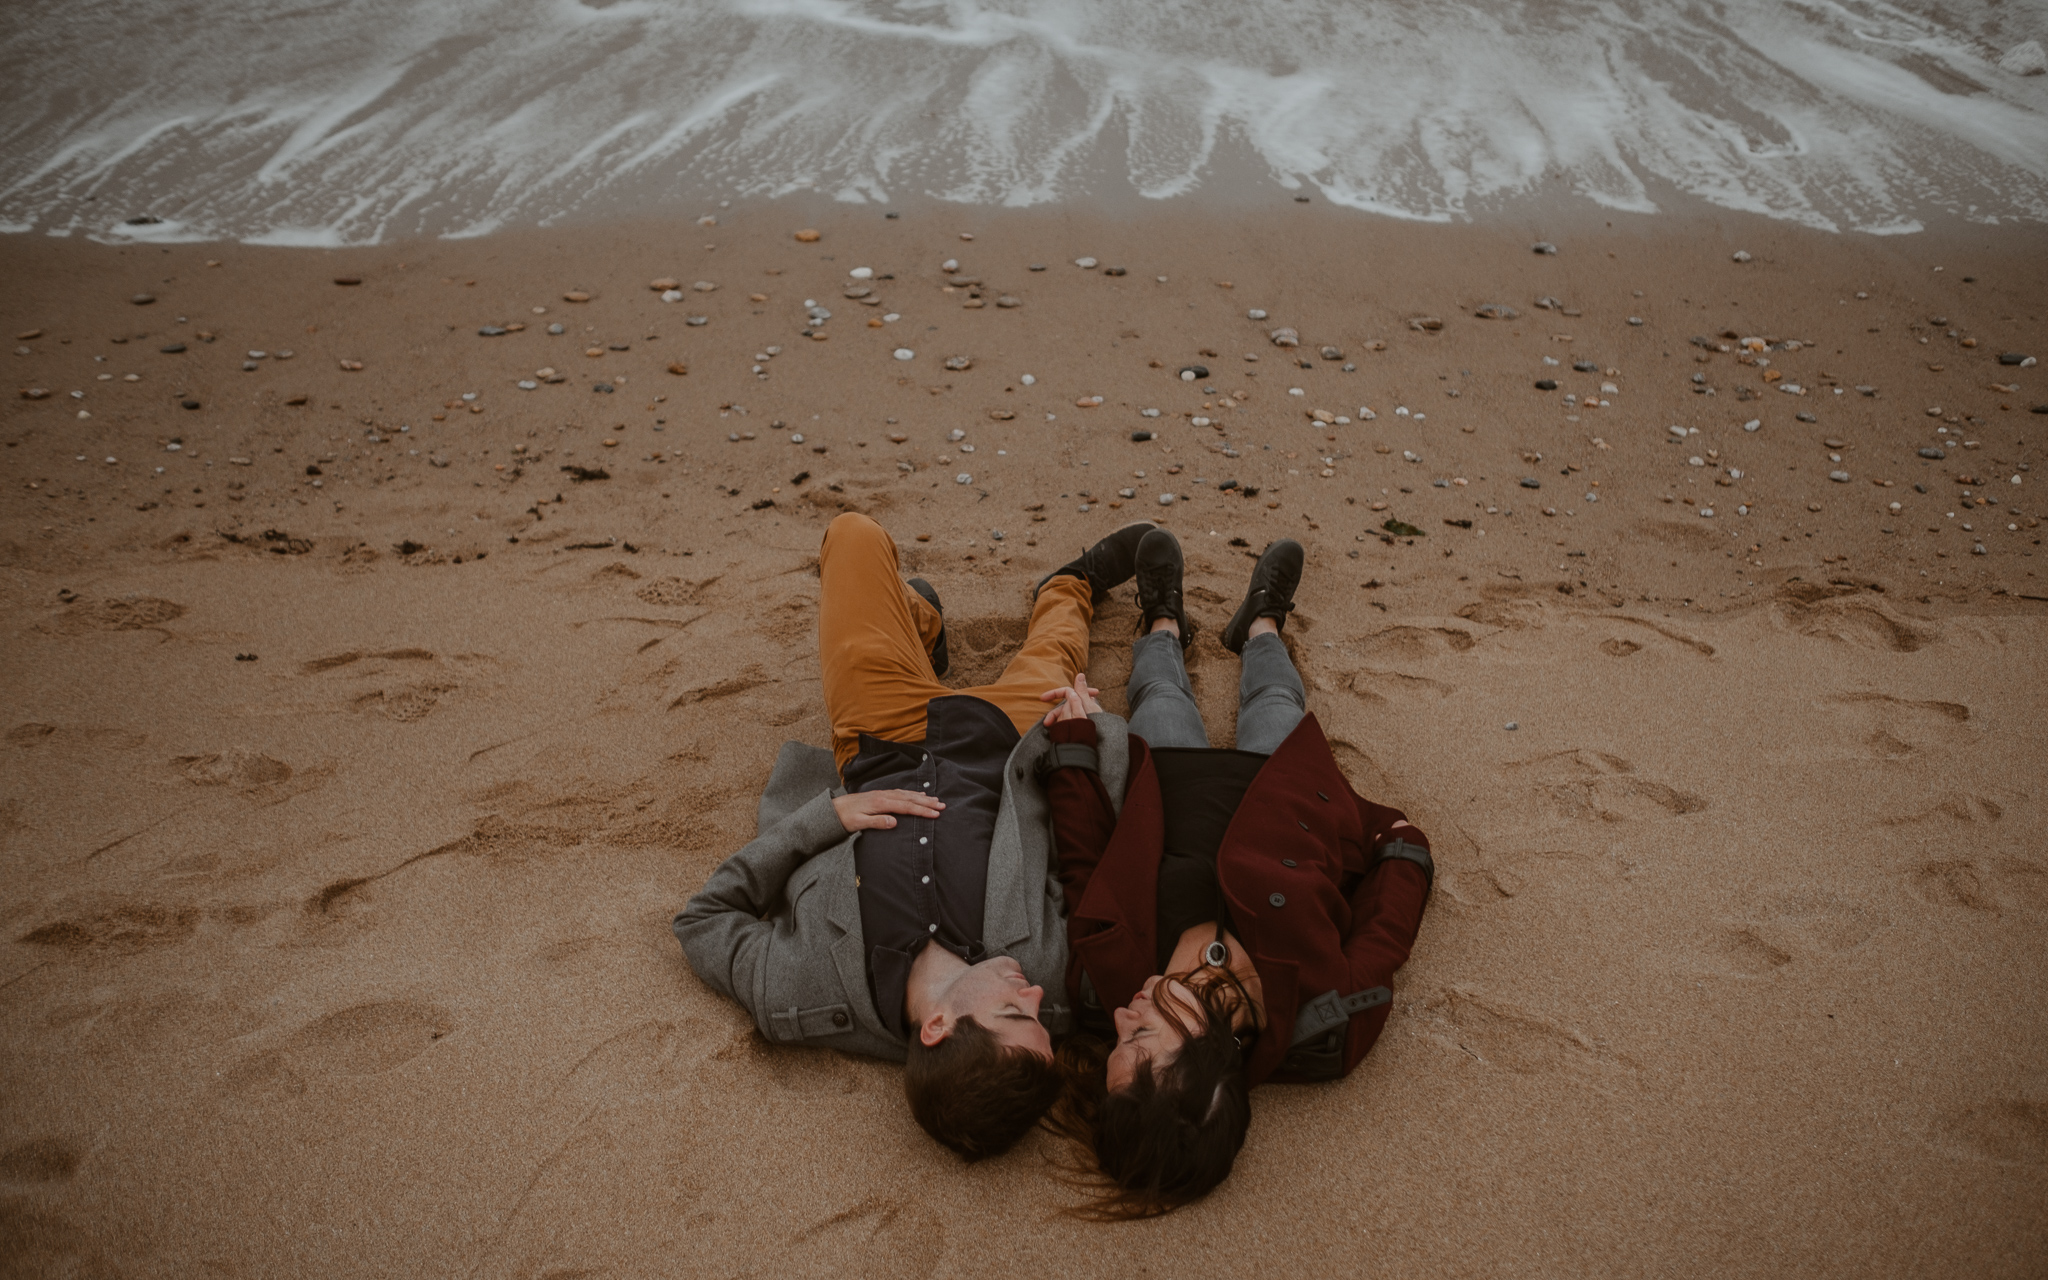 séance engagement romantique d’un couple amoureux sur la plage en Vendée par Geoffrey Arnoldy photographe